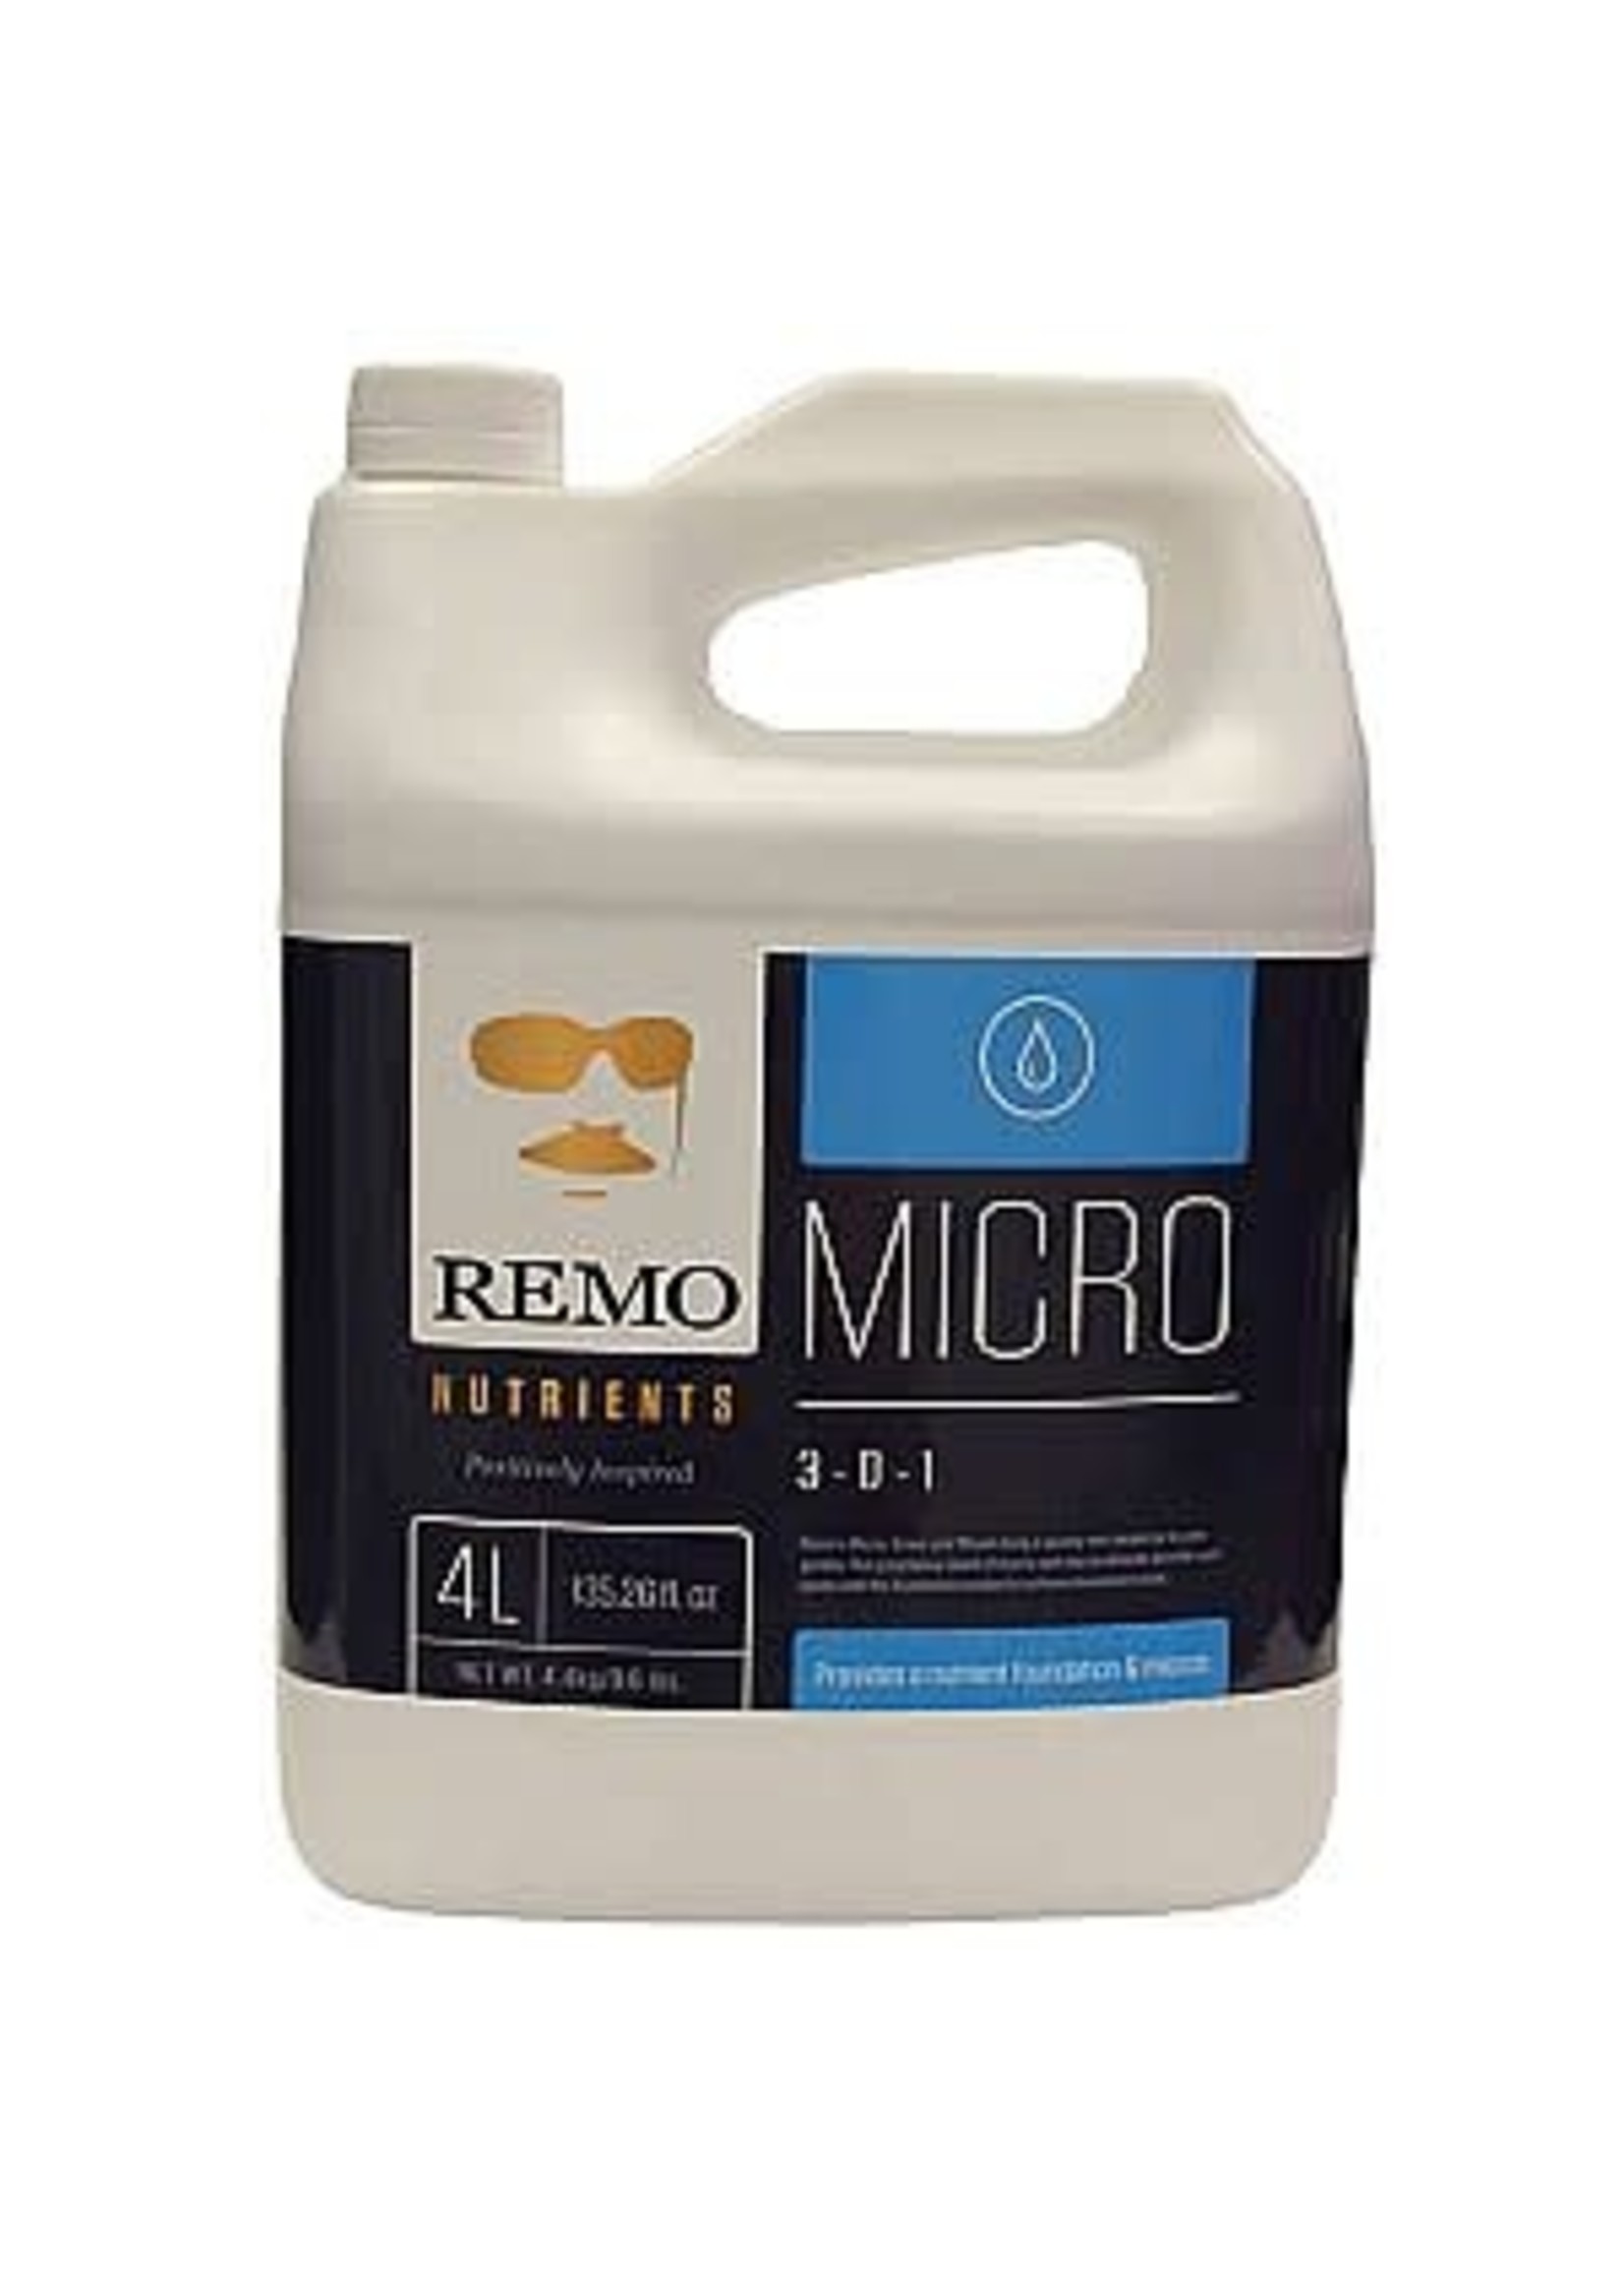 Remo Remo Micro